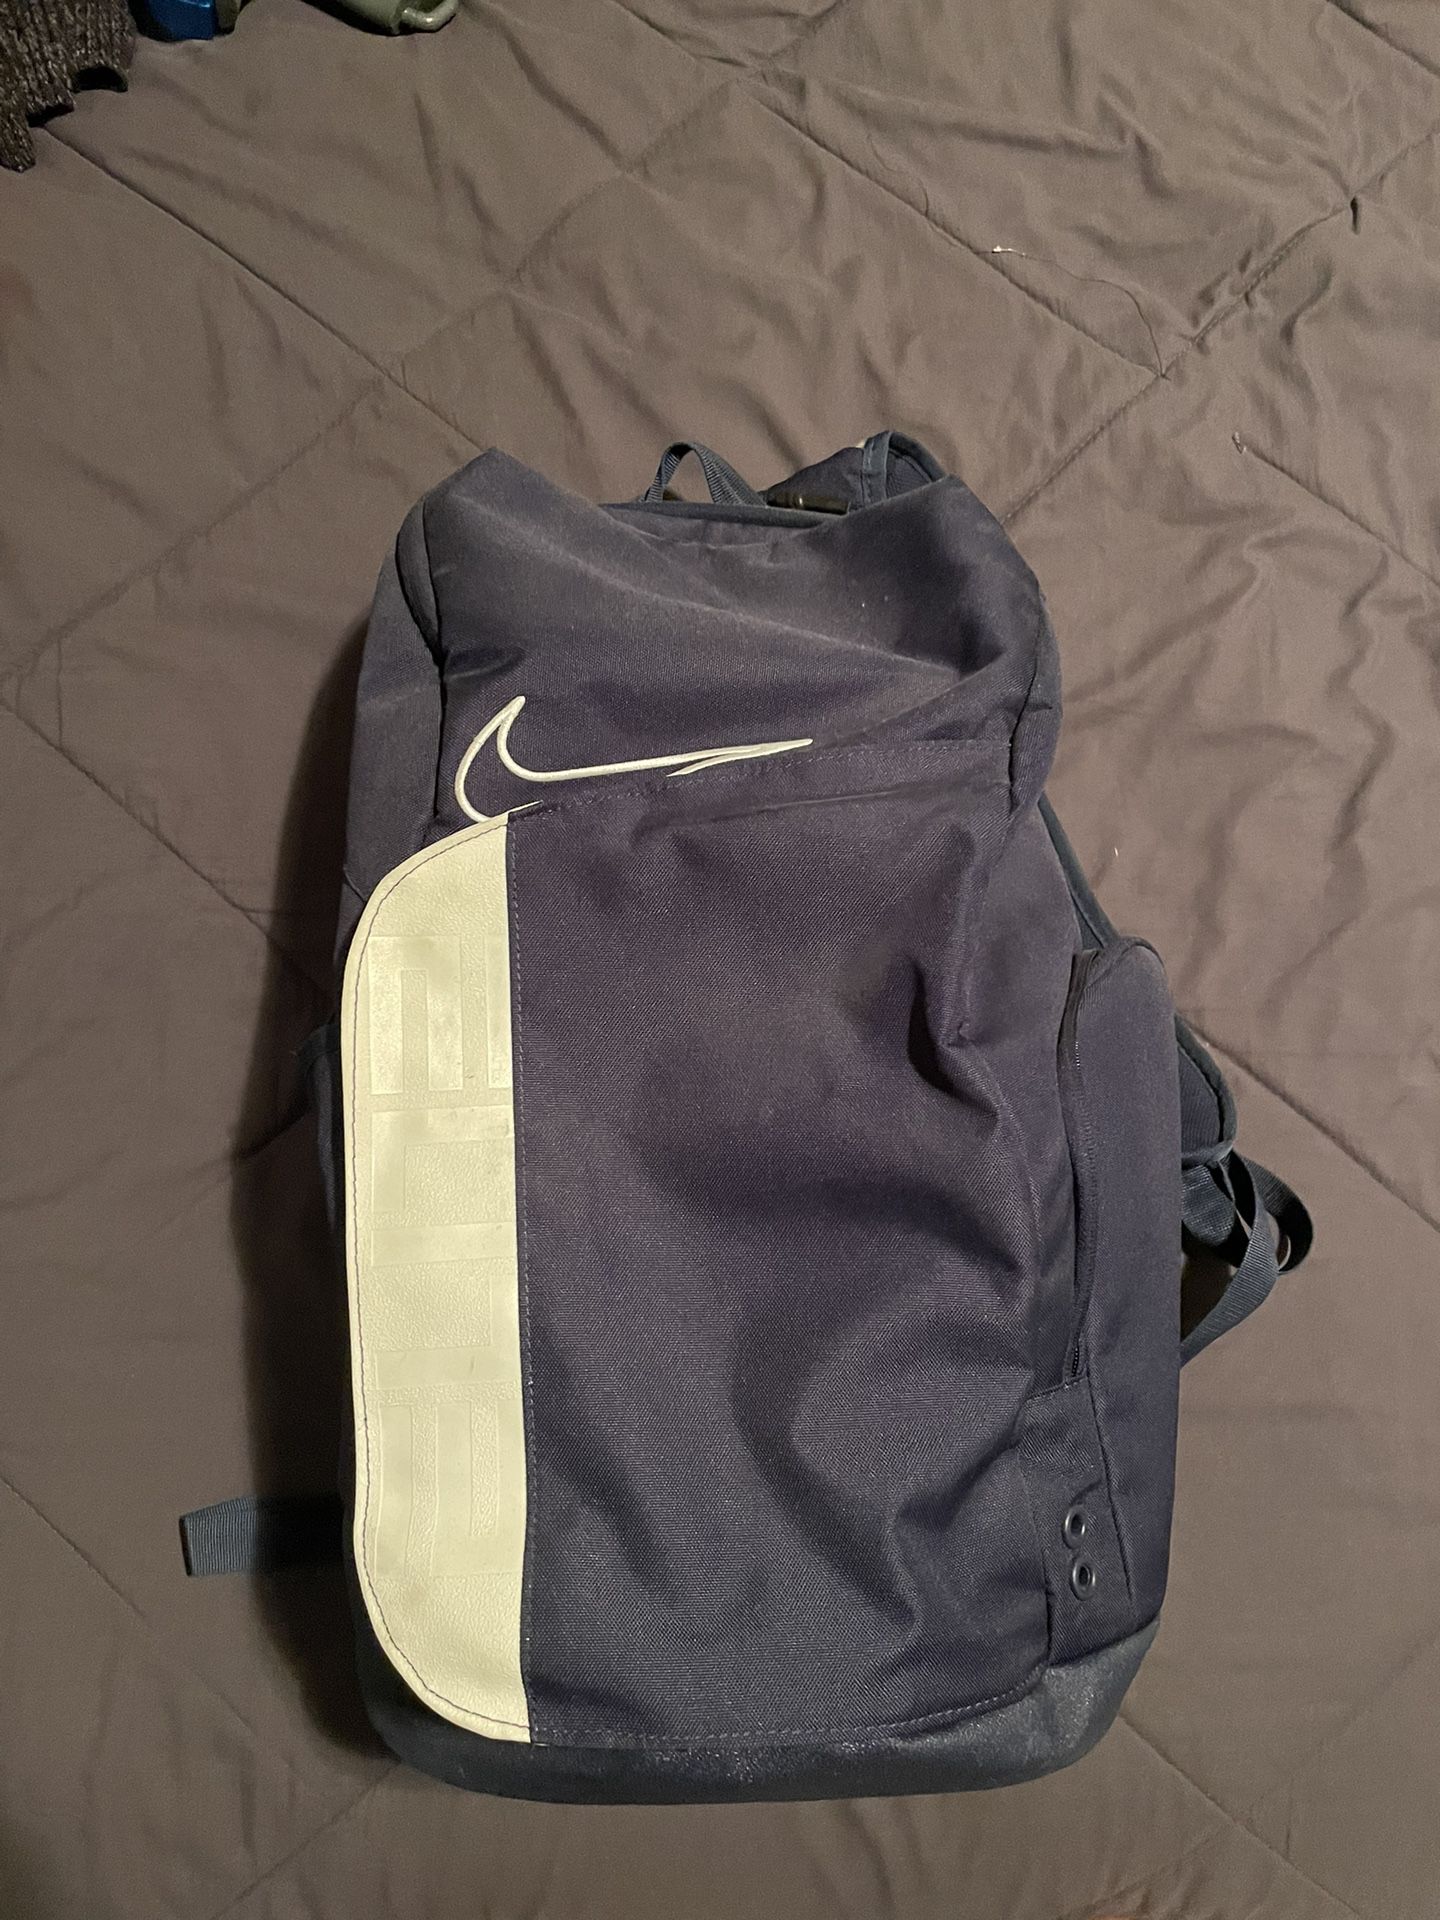 Nike Elite backpack